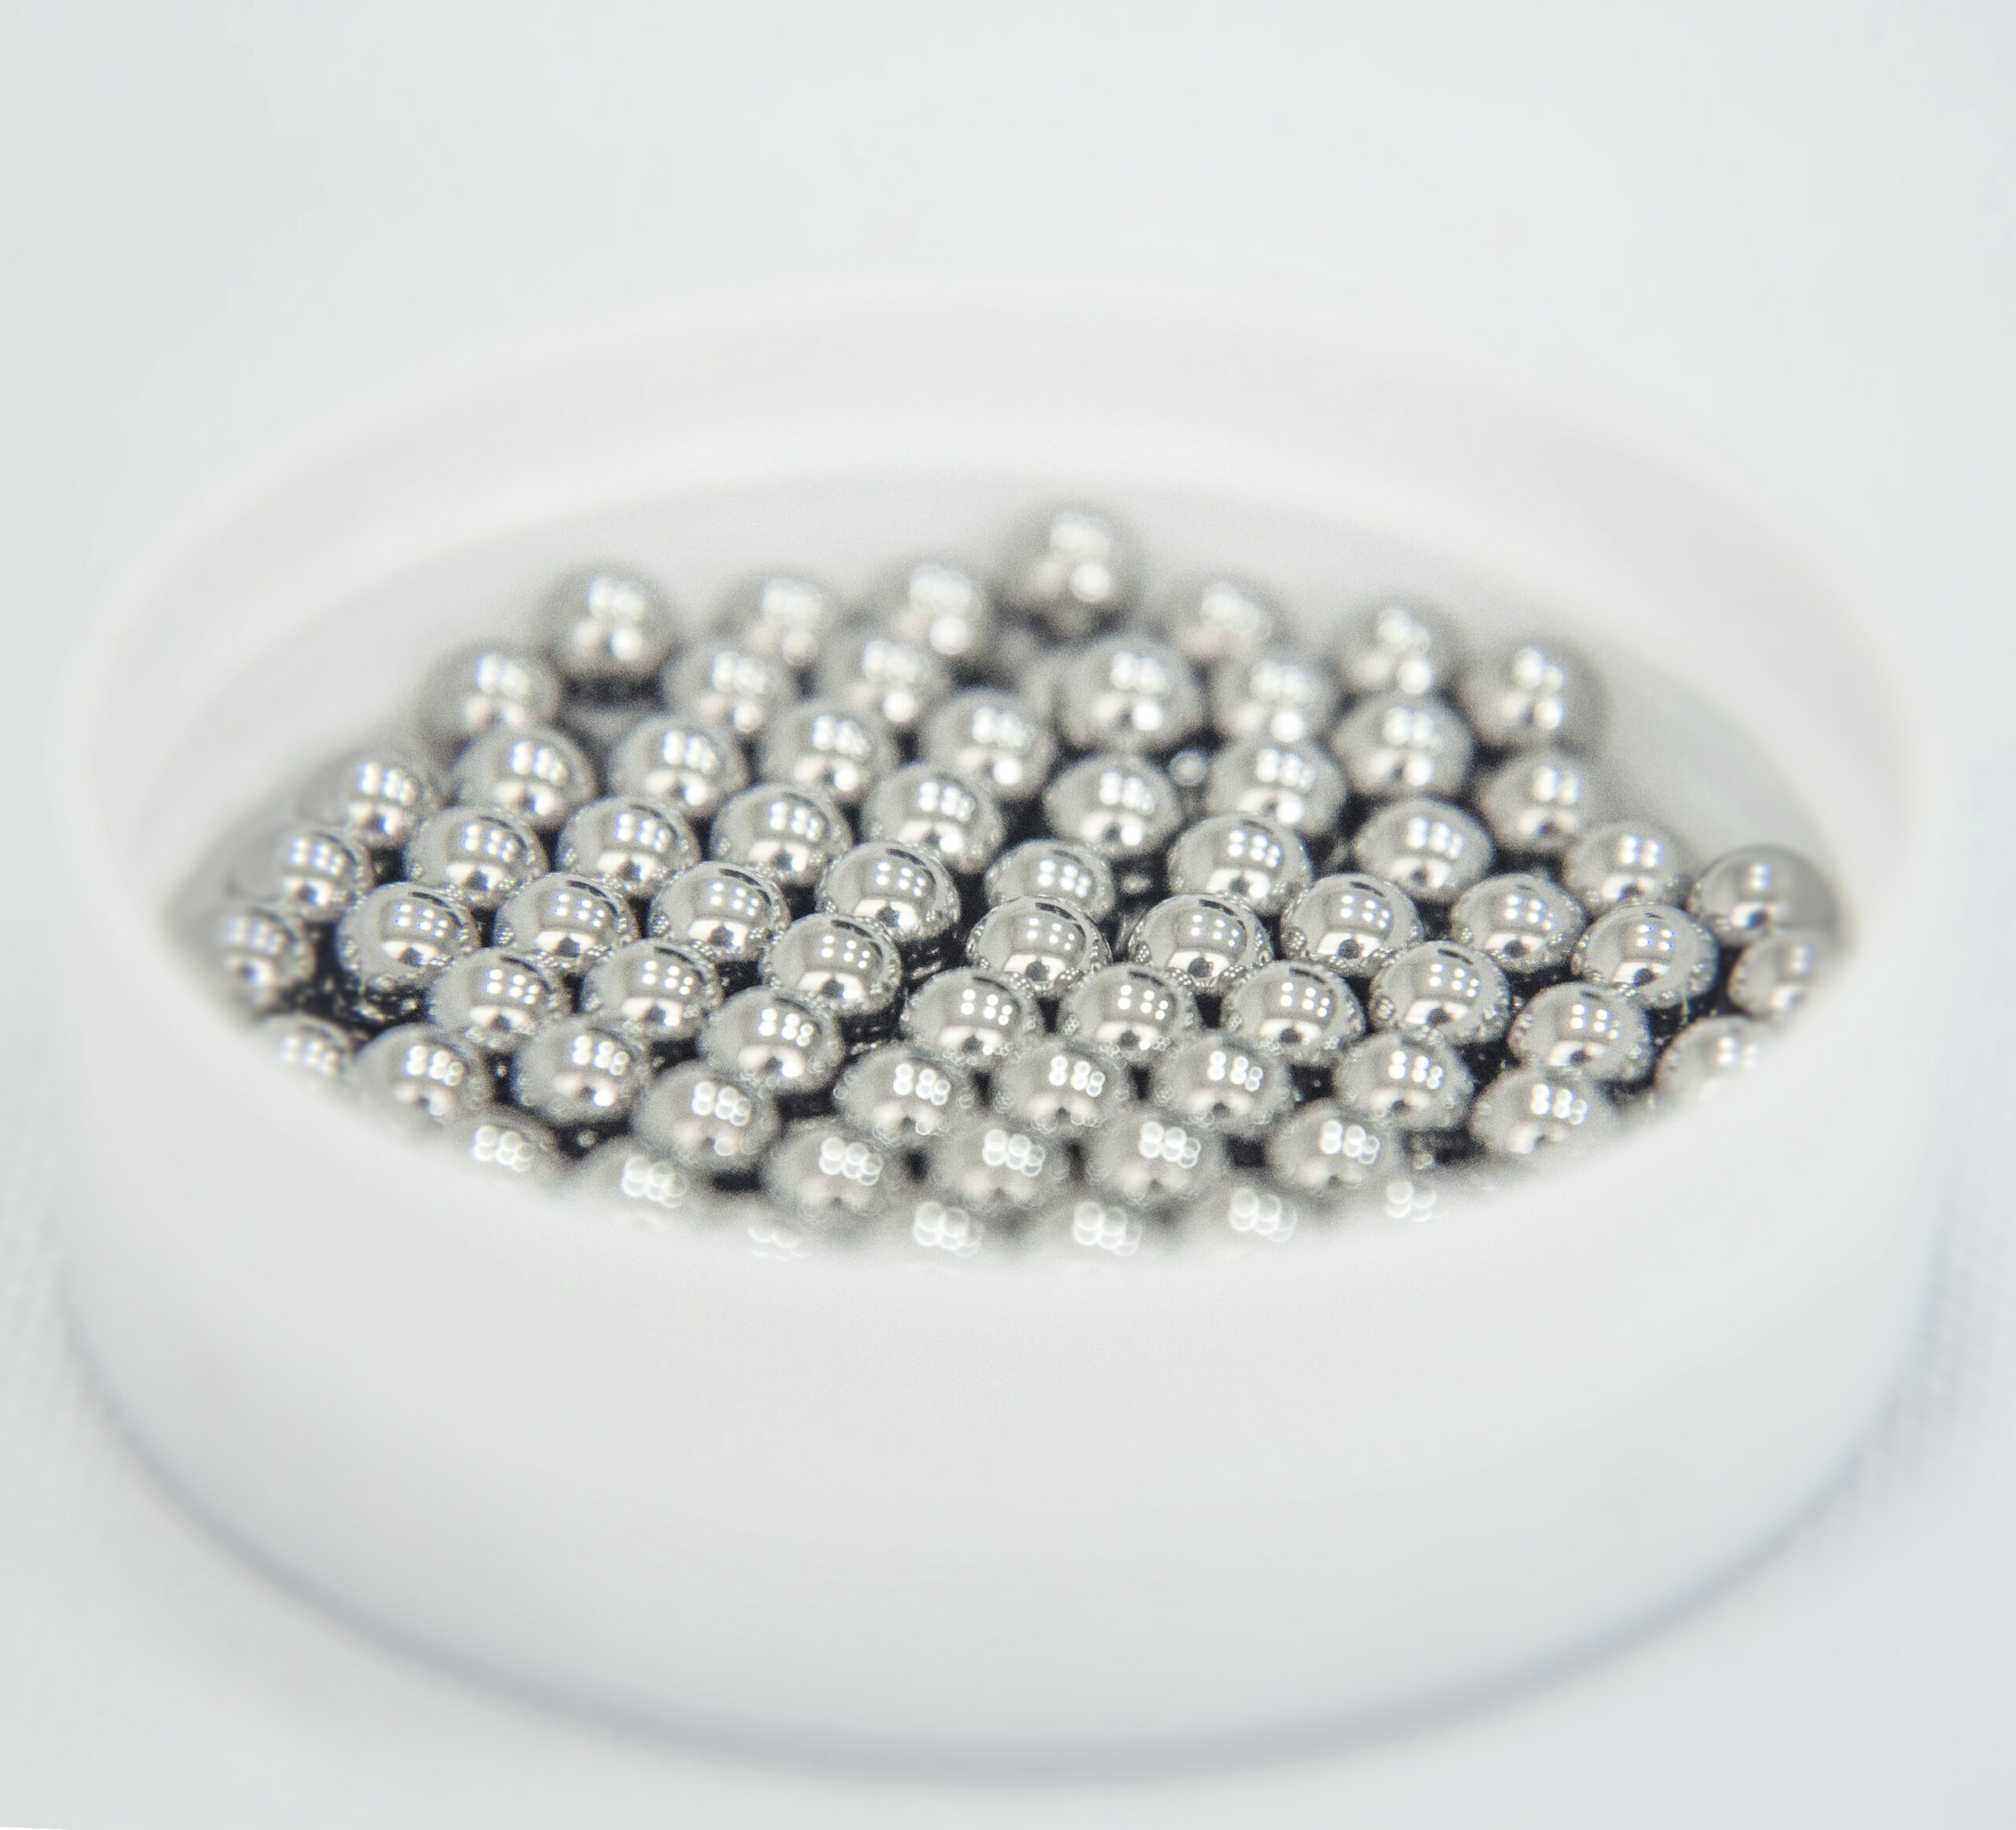 Beads a grandel de aço inox, com 2,8mm de diâmetro.  Para maceração de tecidos. Marca Loccus.